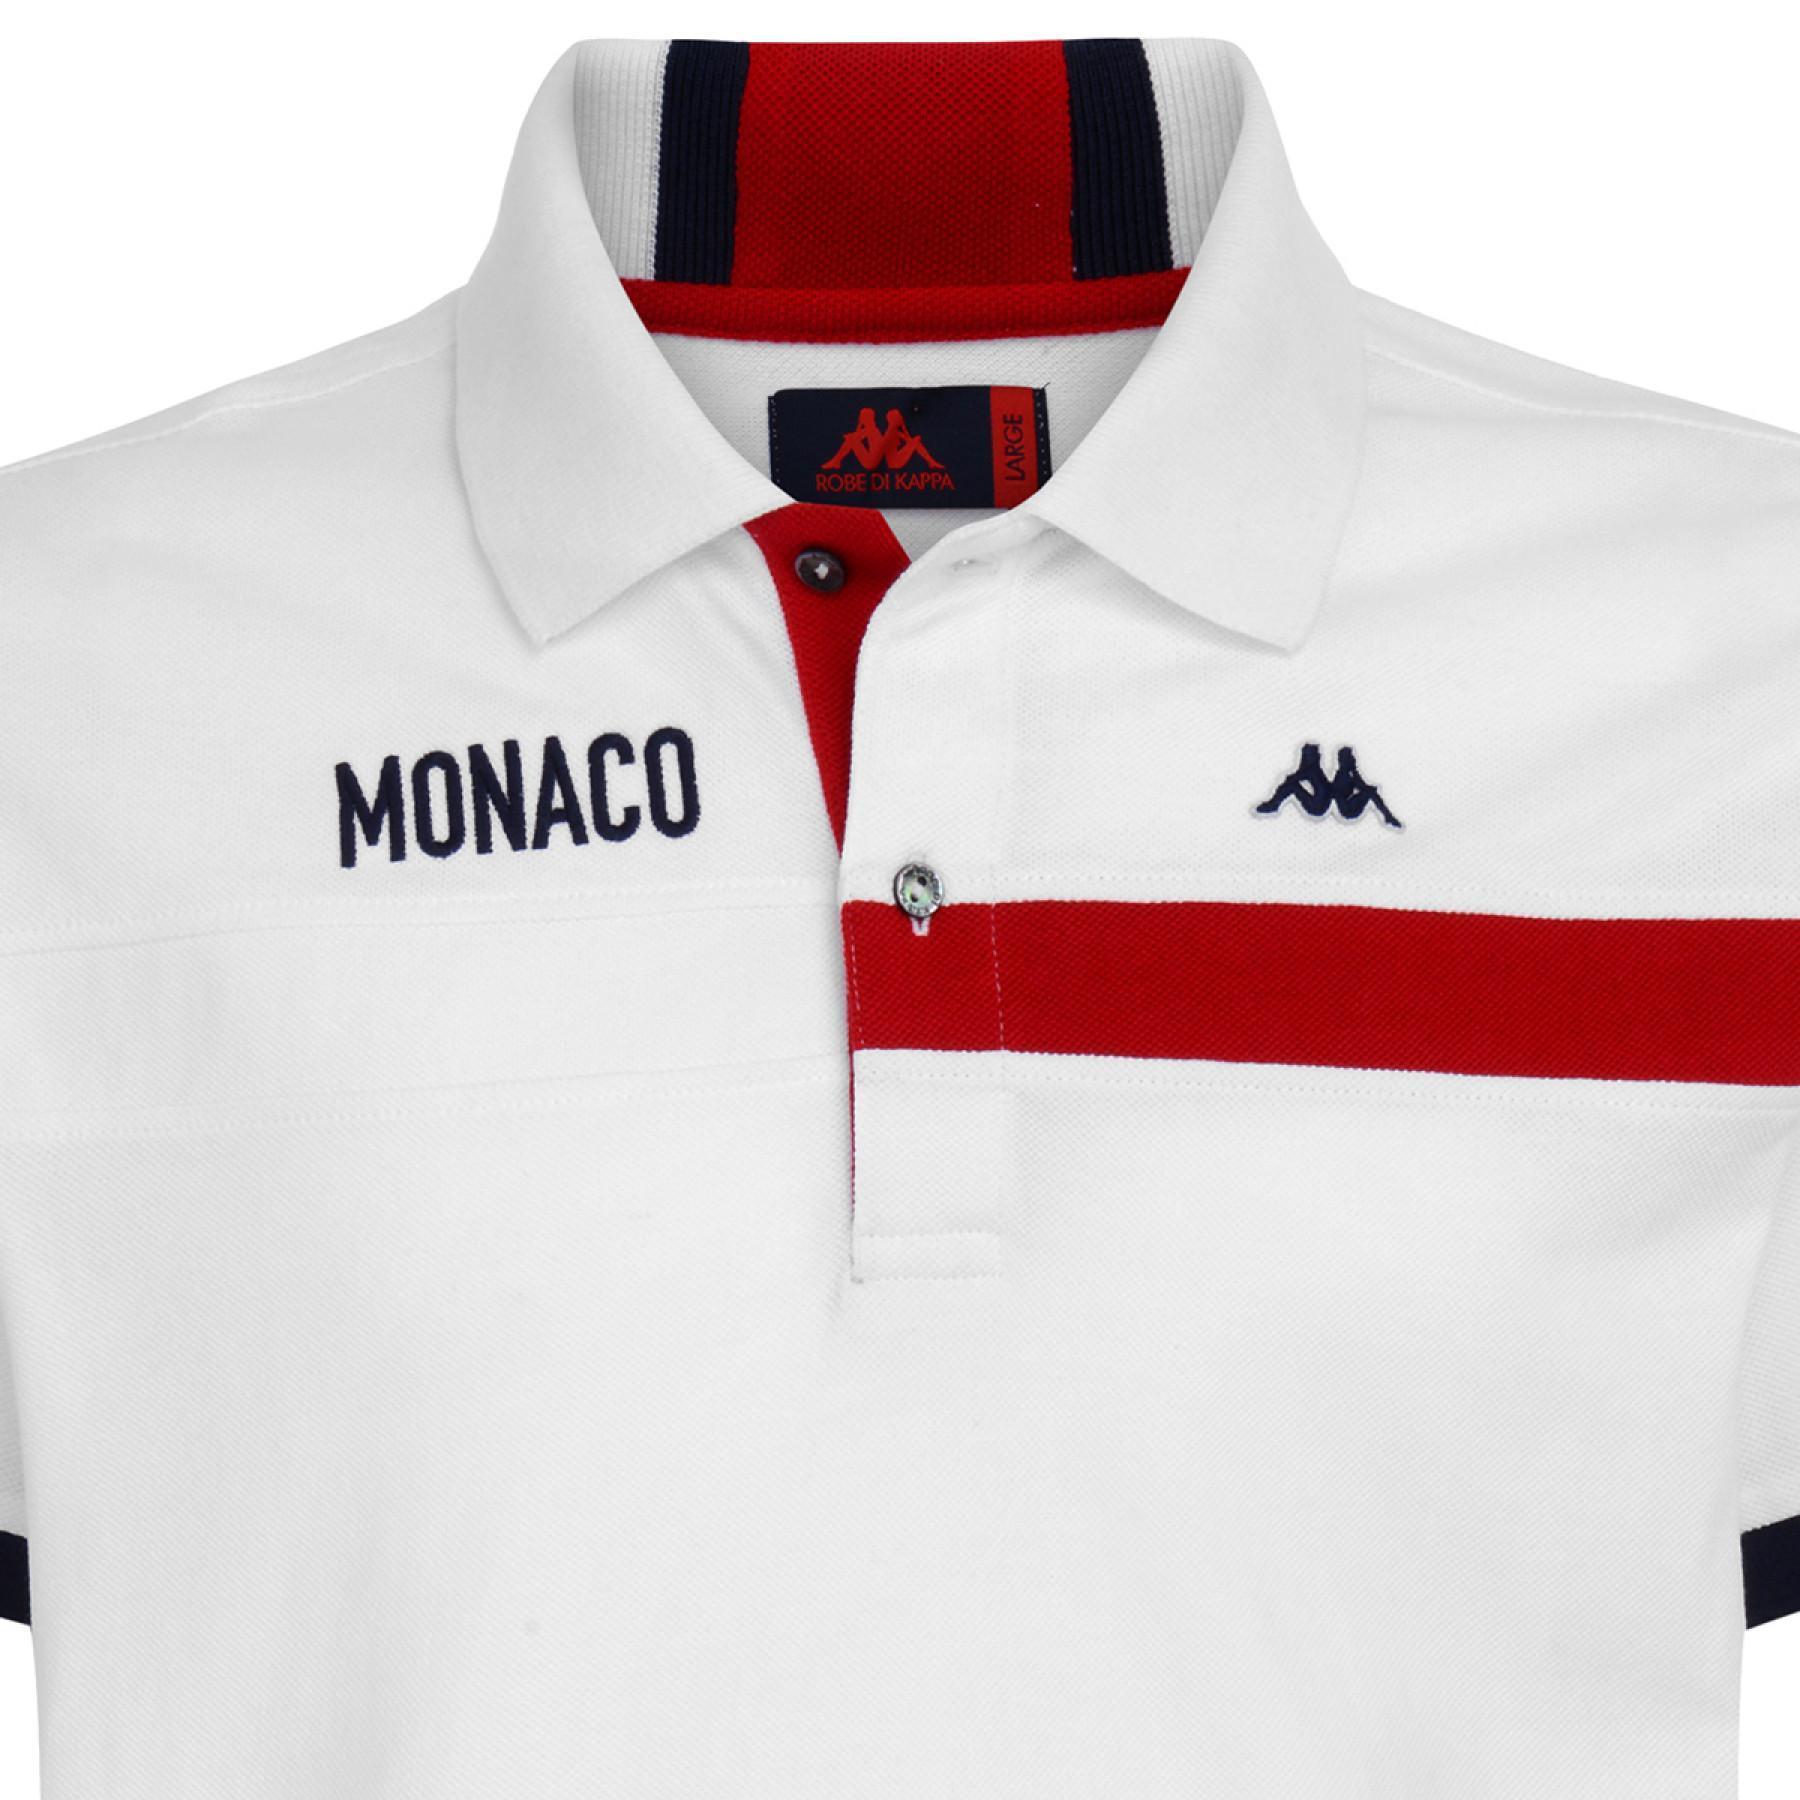 Pólo AS Monaco 2020/21 aubert